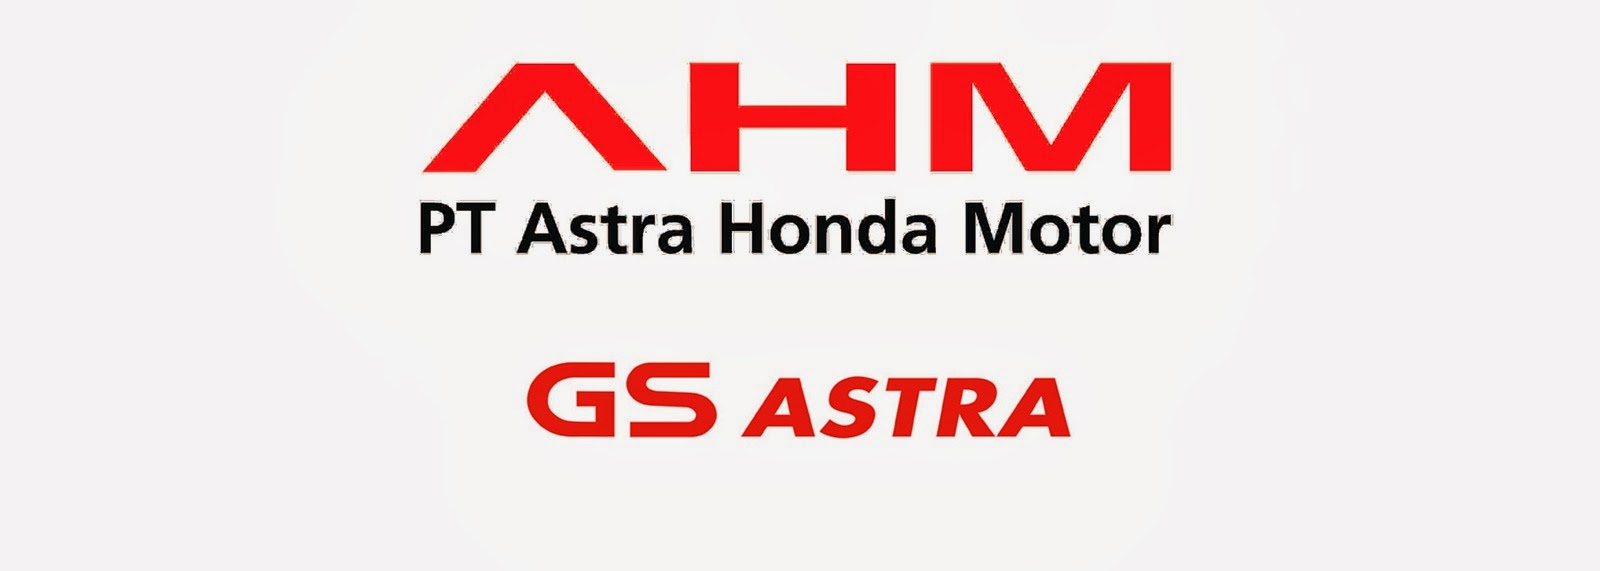 Lowongan Astra Honda Motor Juni 2017 2018 - Lowongan Kerja 